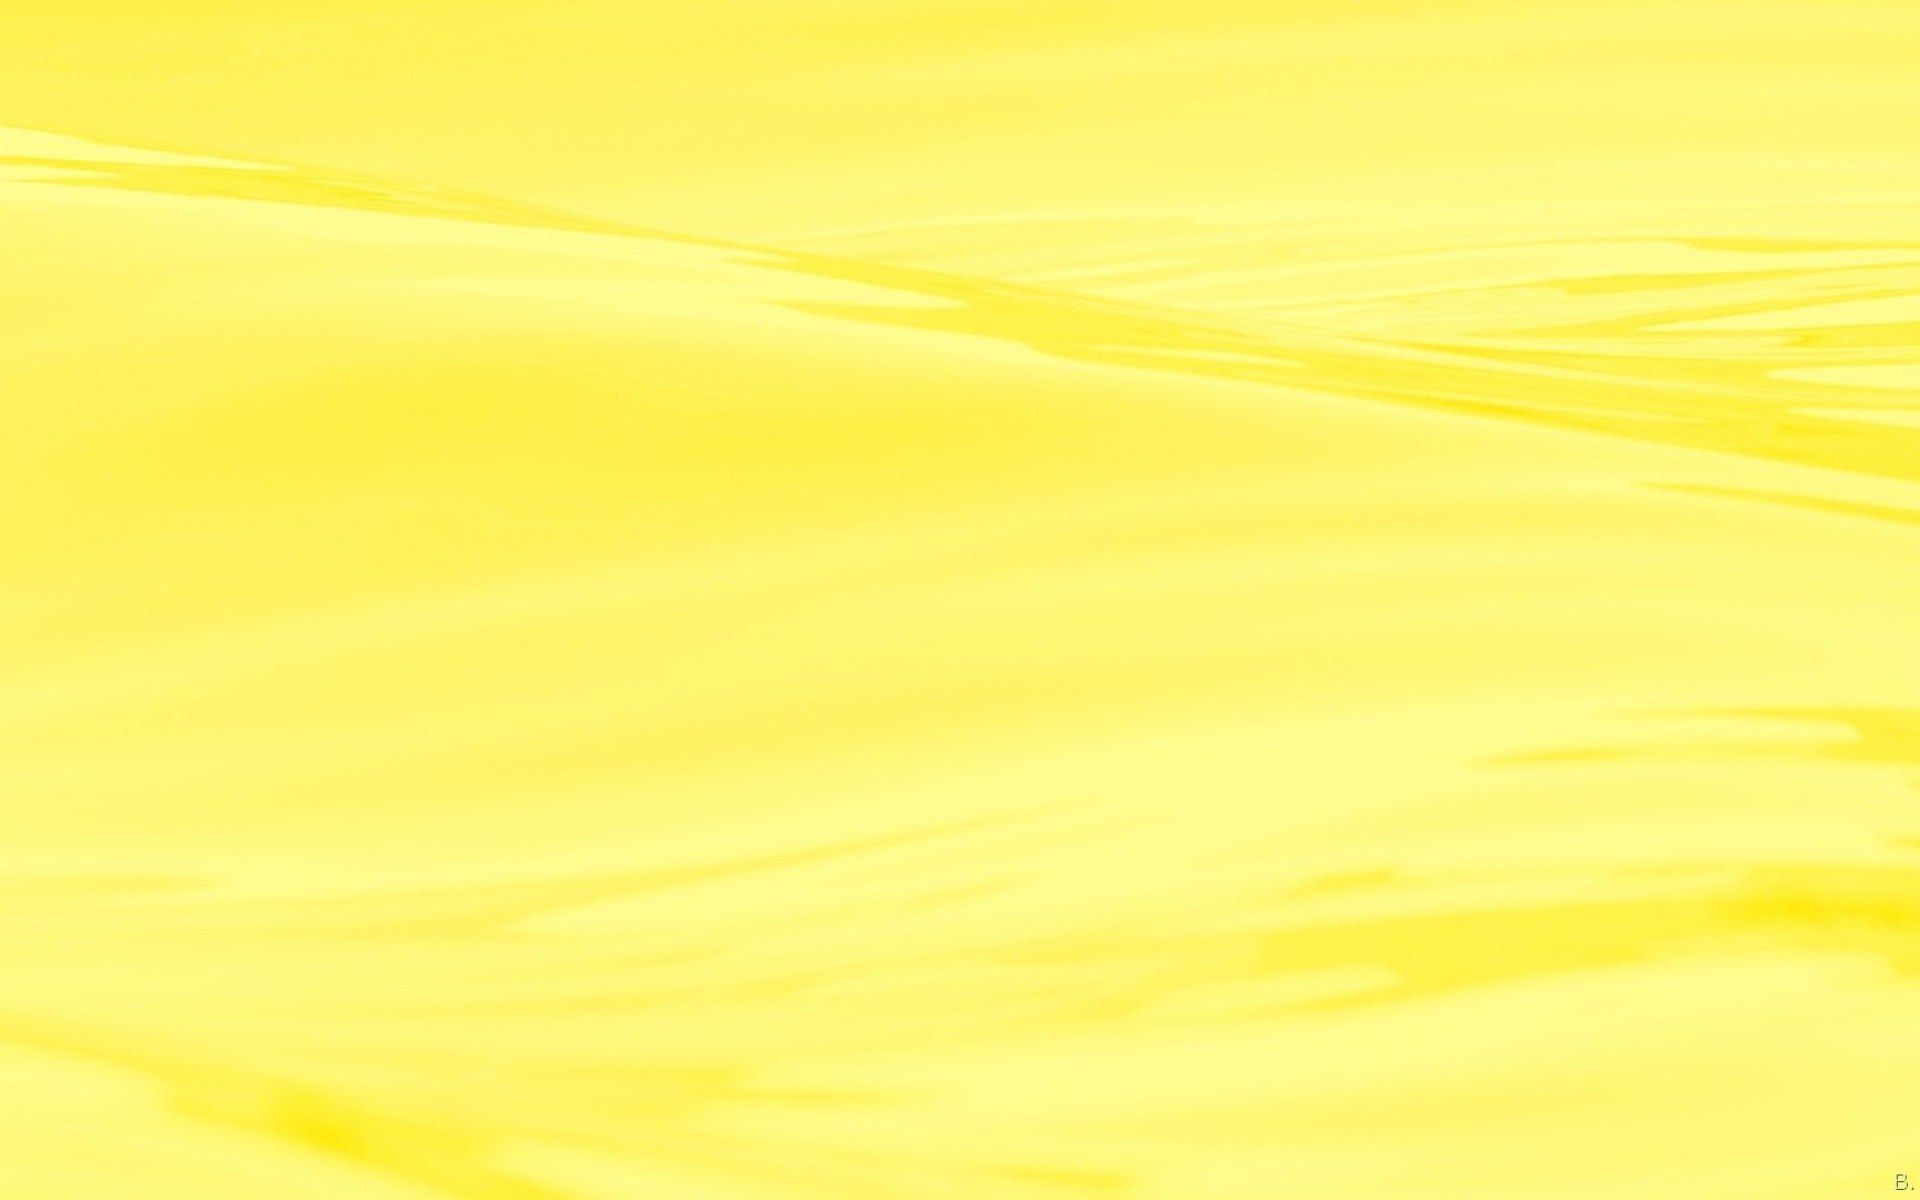 Aesthetic yellow laptop wallpaper • Wallpaper For You The Best Wallpaper For Desktop & Mobile • Aesthetic Wallpaper